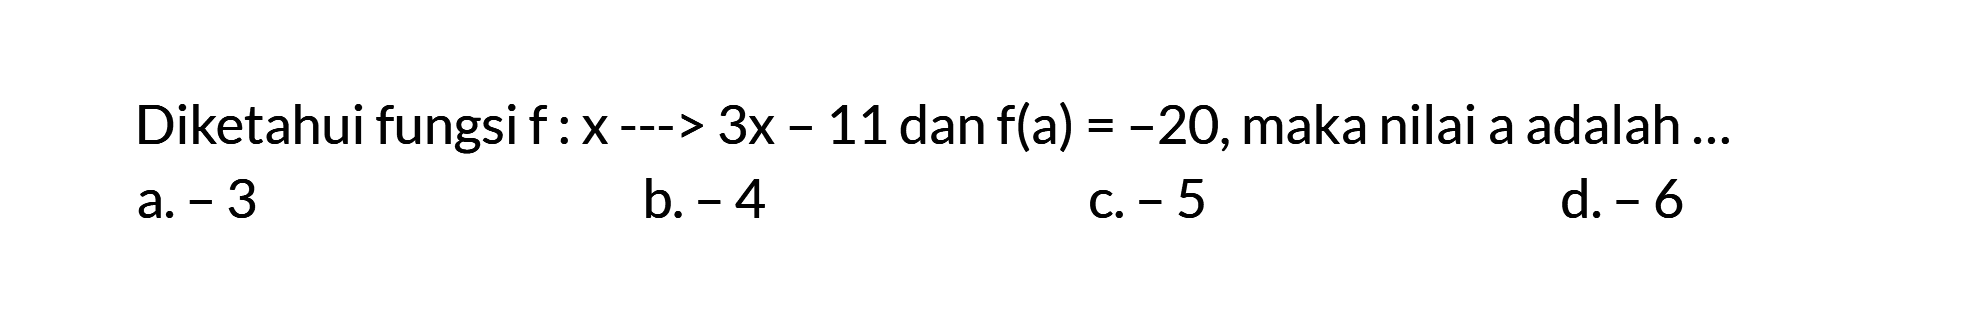 Diketahui fungsi f : X ---> 3x - 11 dan f(a) = -20, maka nilai a adalah